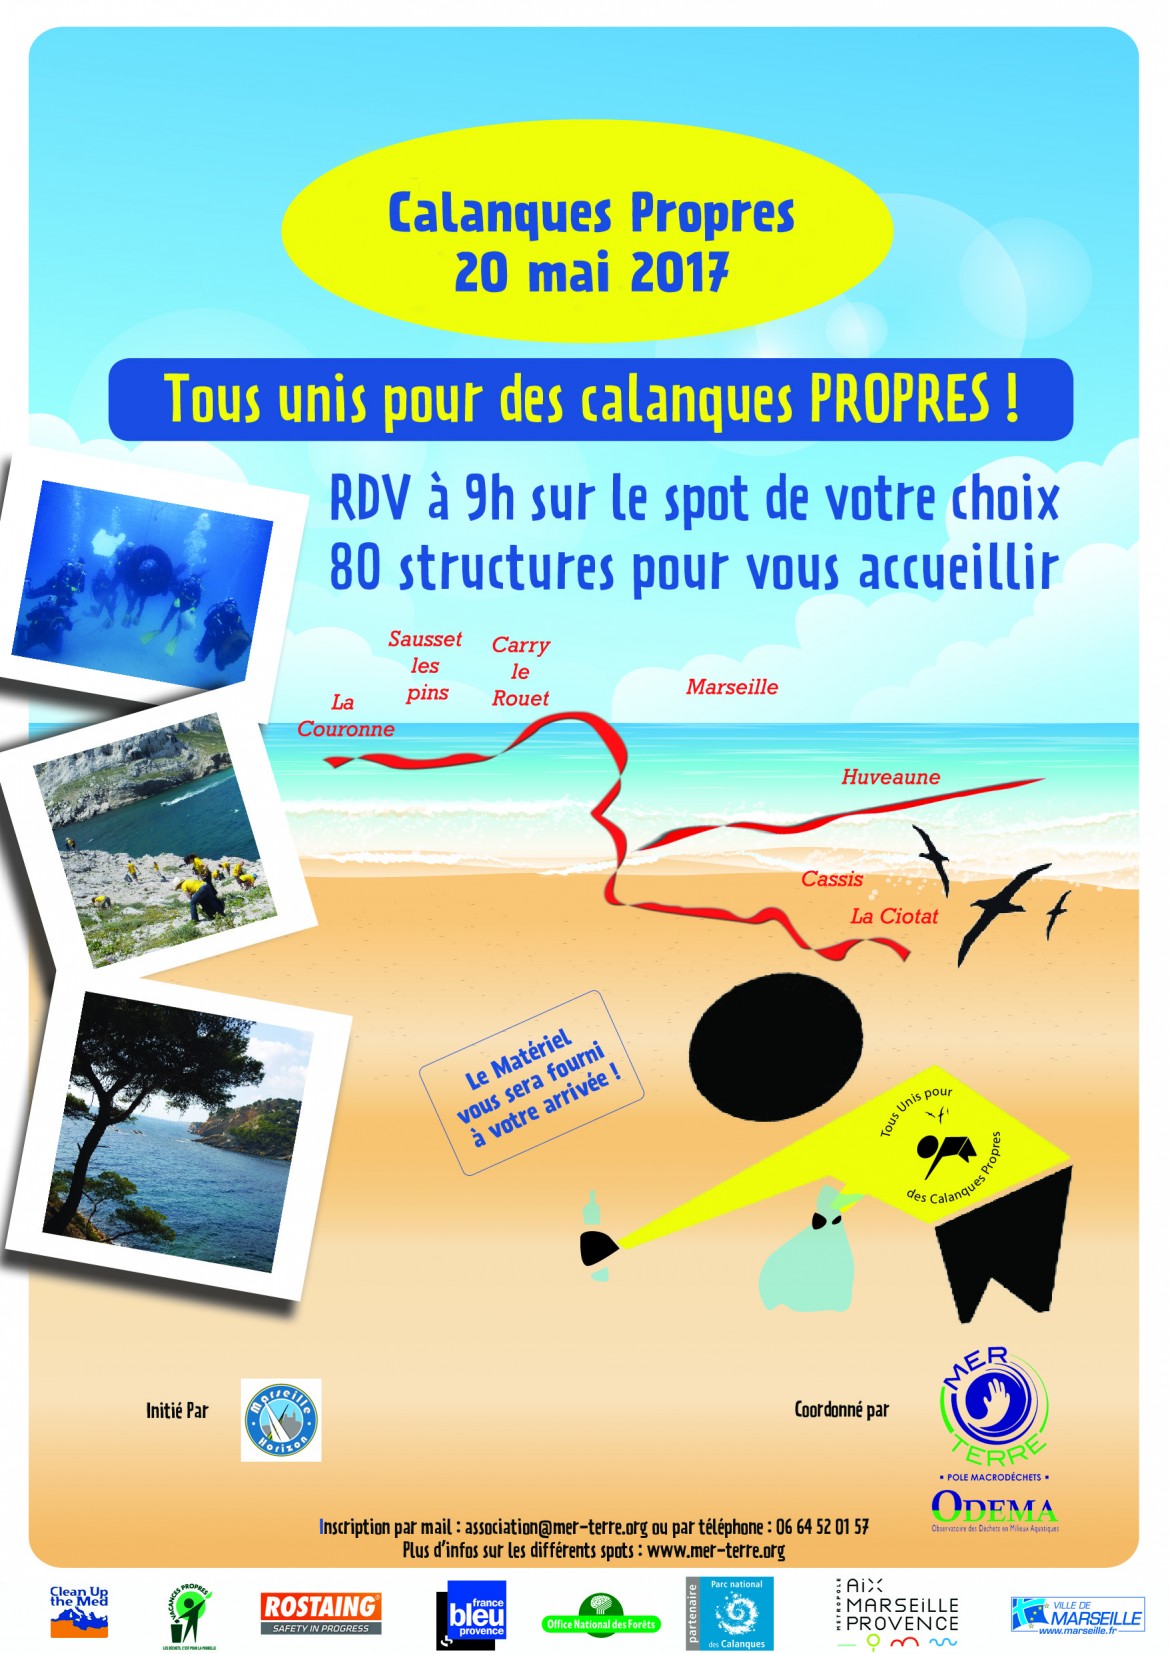 Marseille - Participez à l'opération Calanques Propres 2017 !